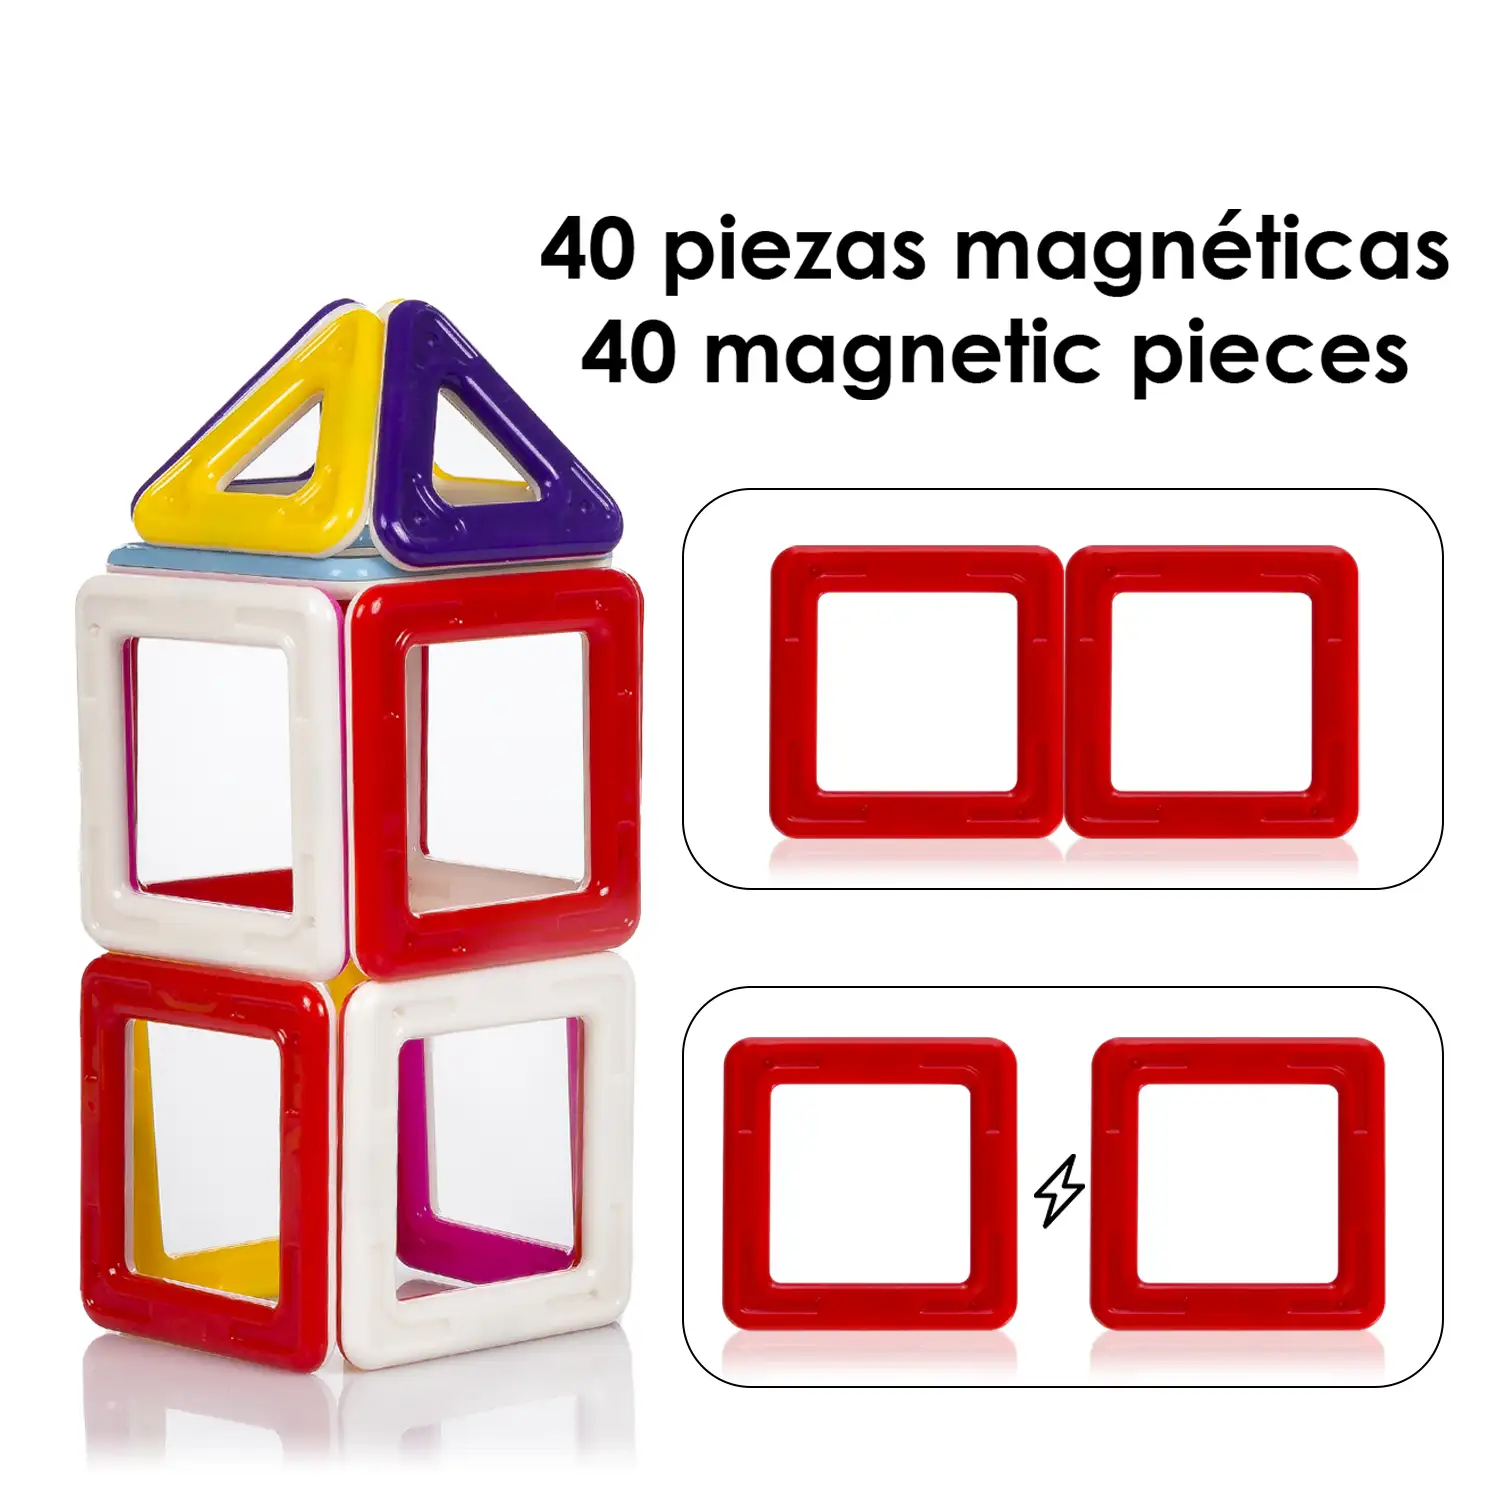 Piezas magnéticas de construcción para niños, con ruedas móviles para crear vehículos. 40 piezas.